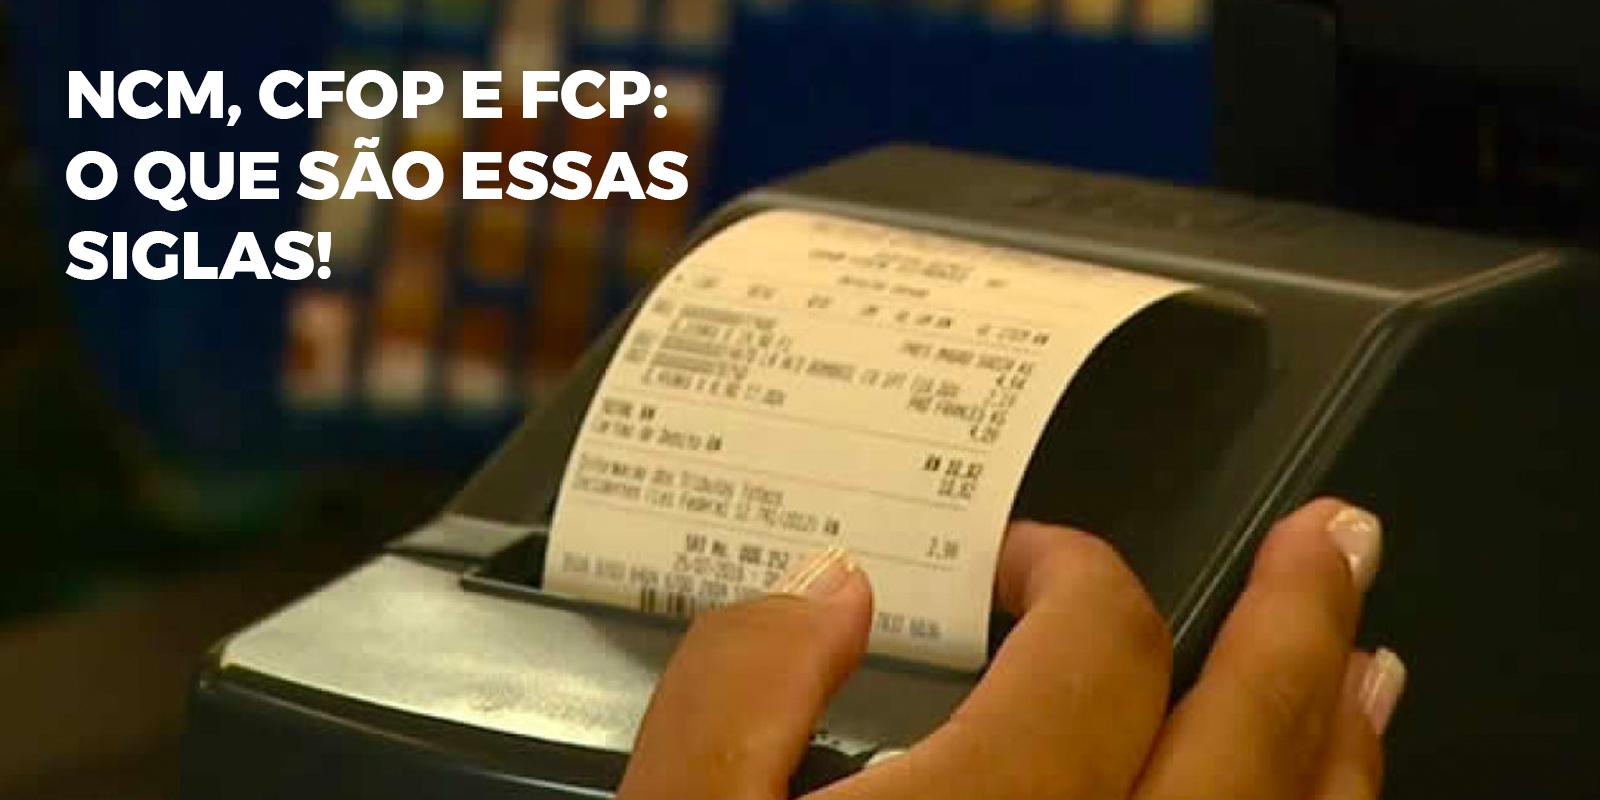 NCM, CFOP e FCP: O Que São Essas Siglas da Nota Fiscal Eletrônica? 